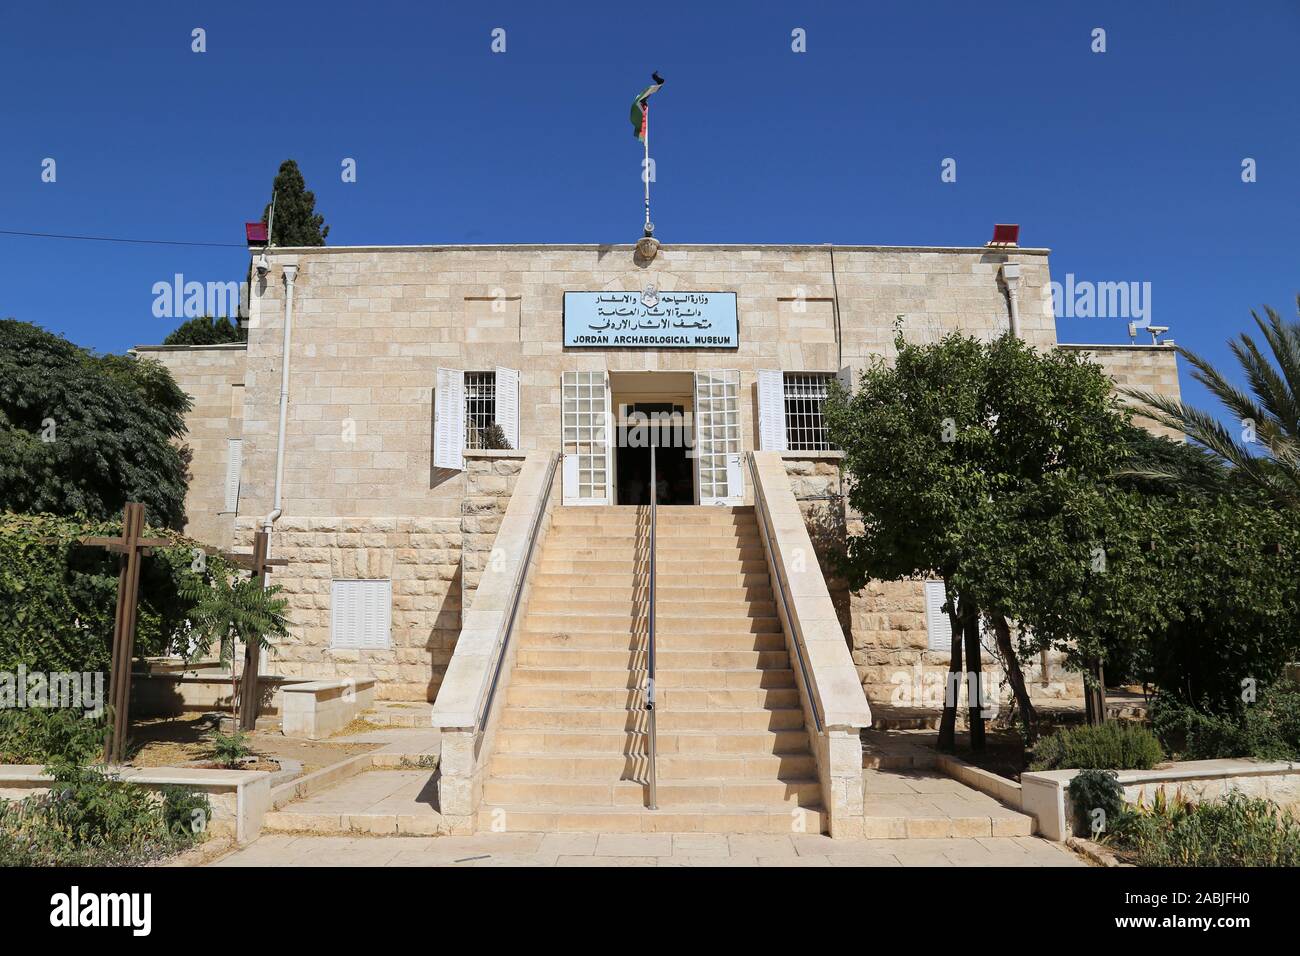 Jordan Museum Amman Stock Photography Images - Alamy